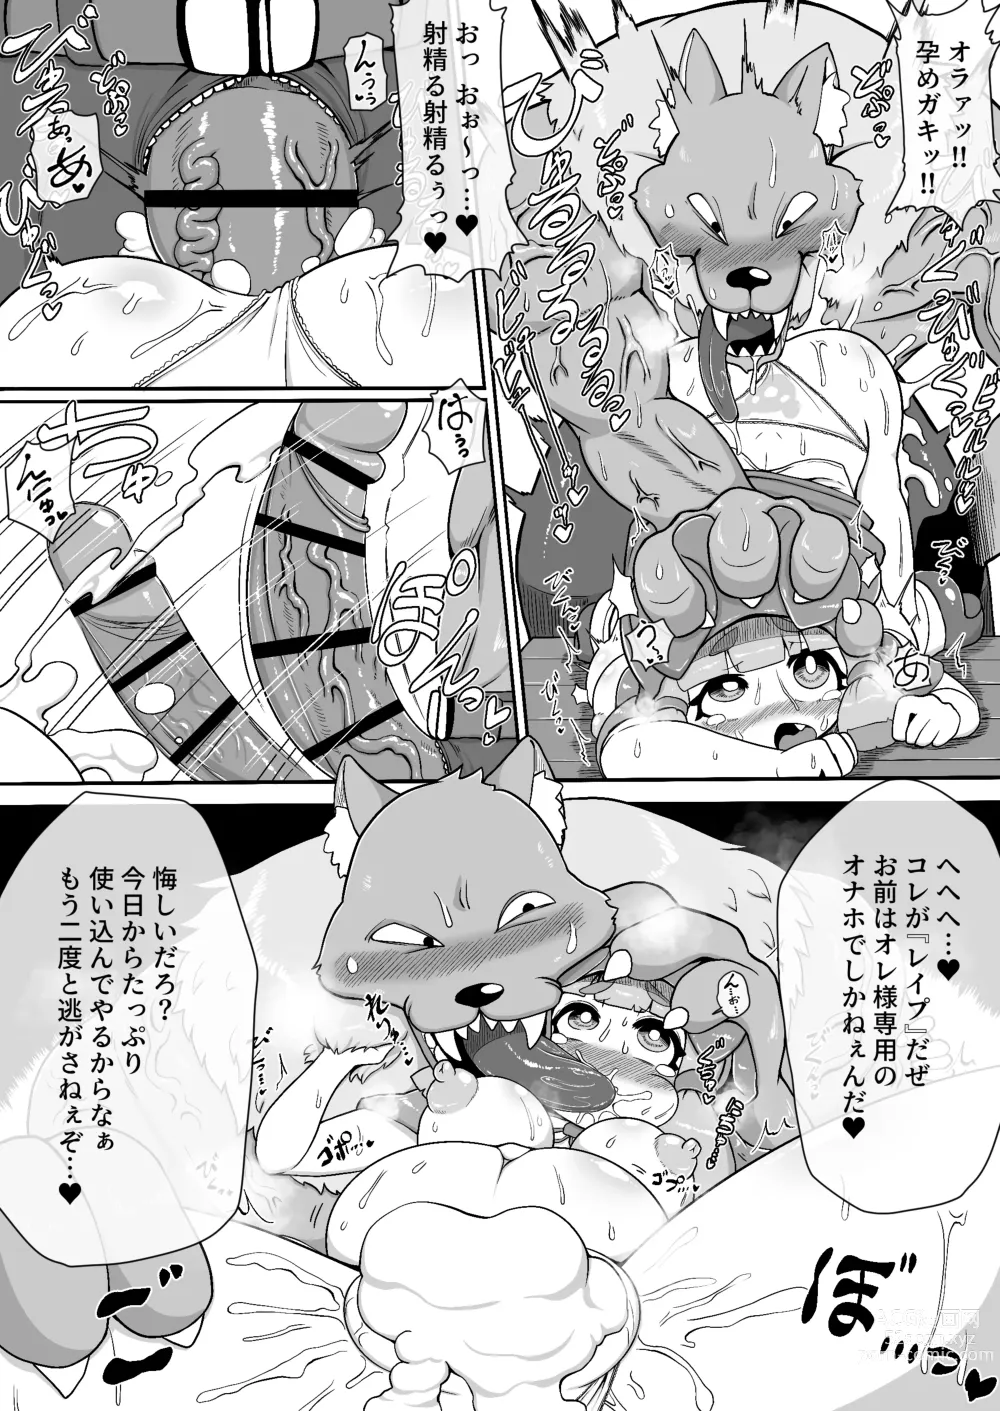 Page 14 of doujinshi Akazukin-chan ga ōkami-san ni hageshiku okasa reru dake no manga